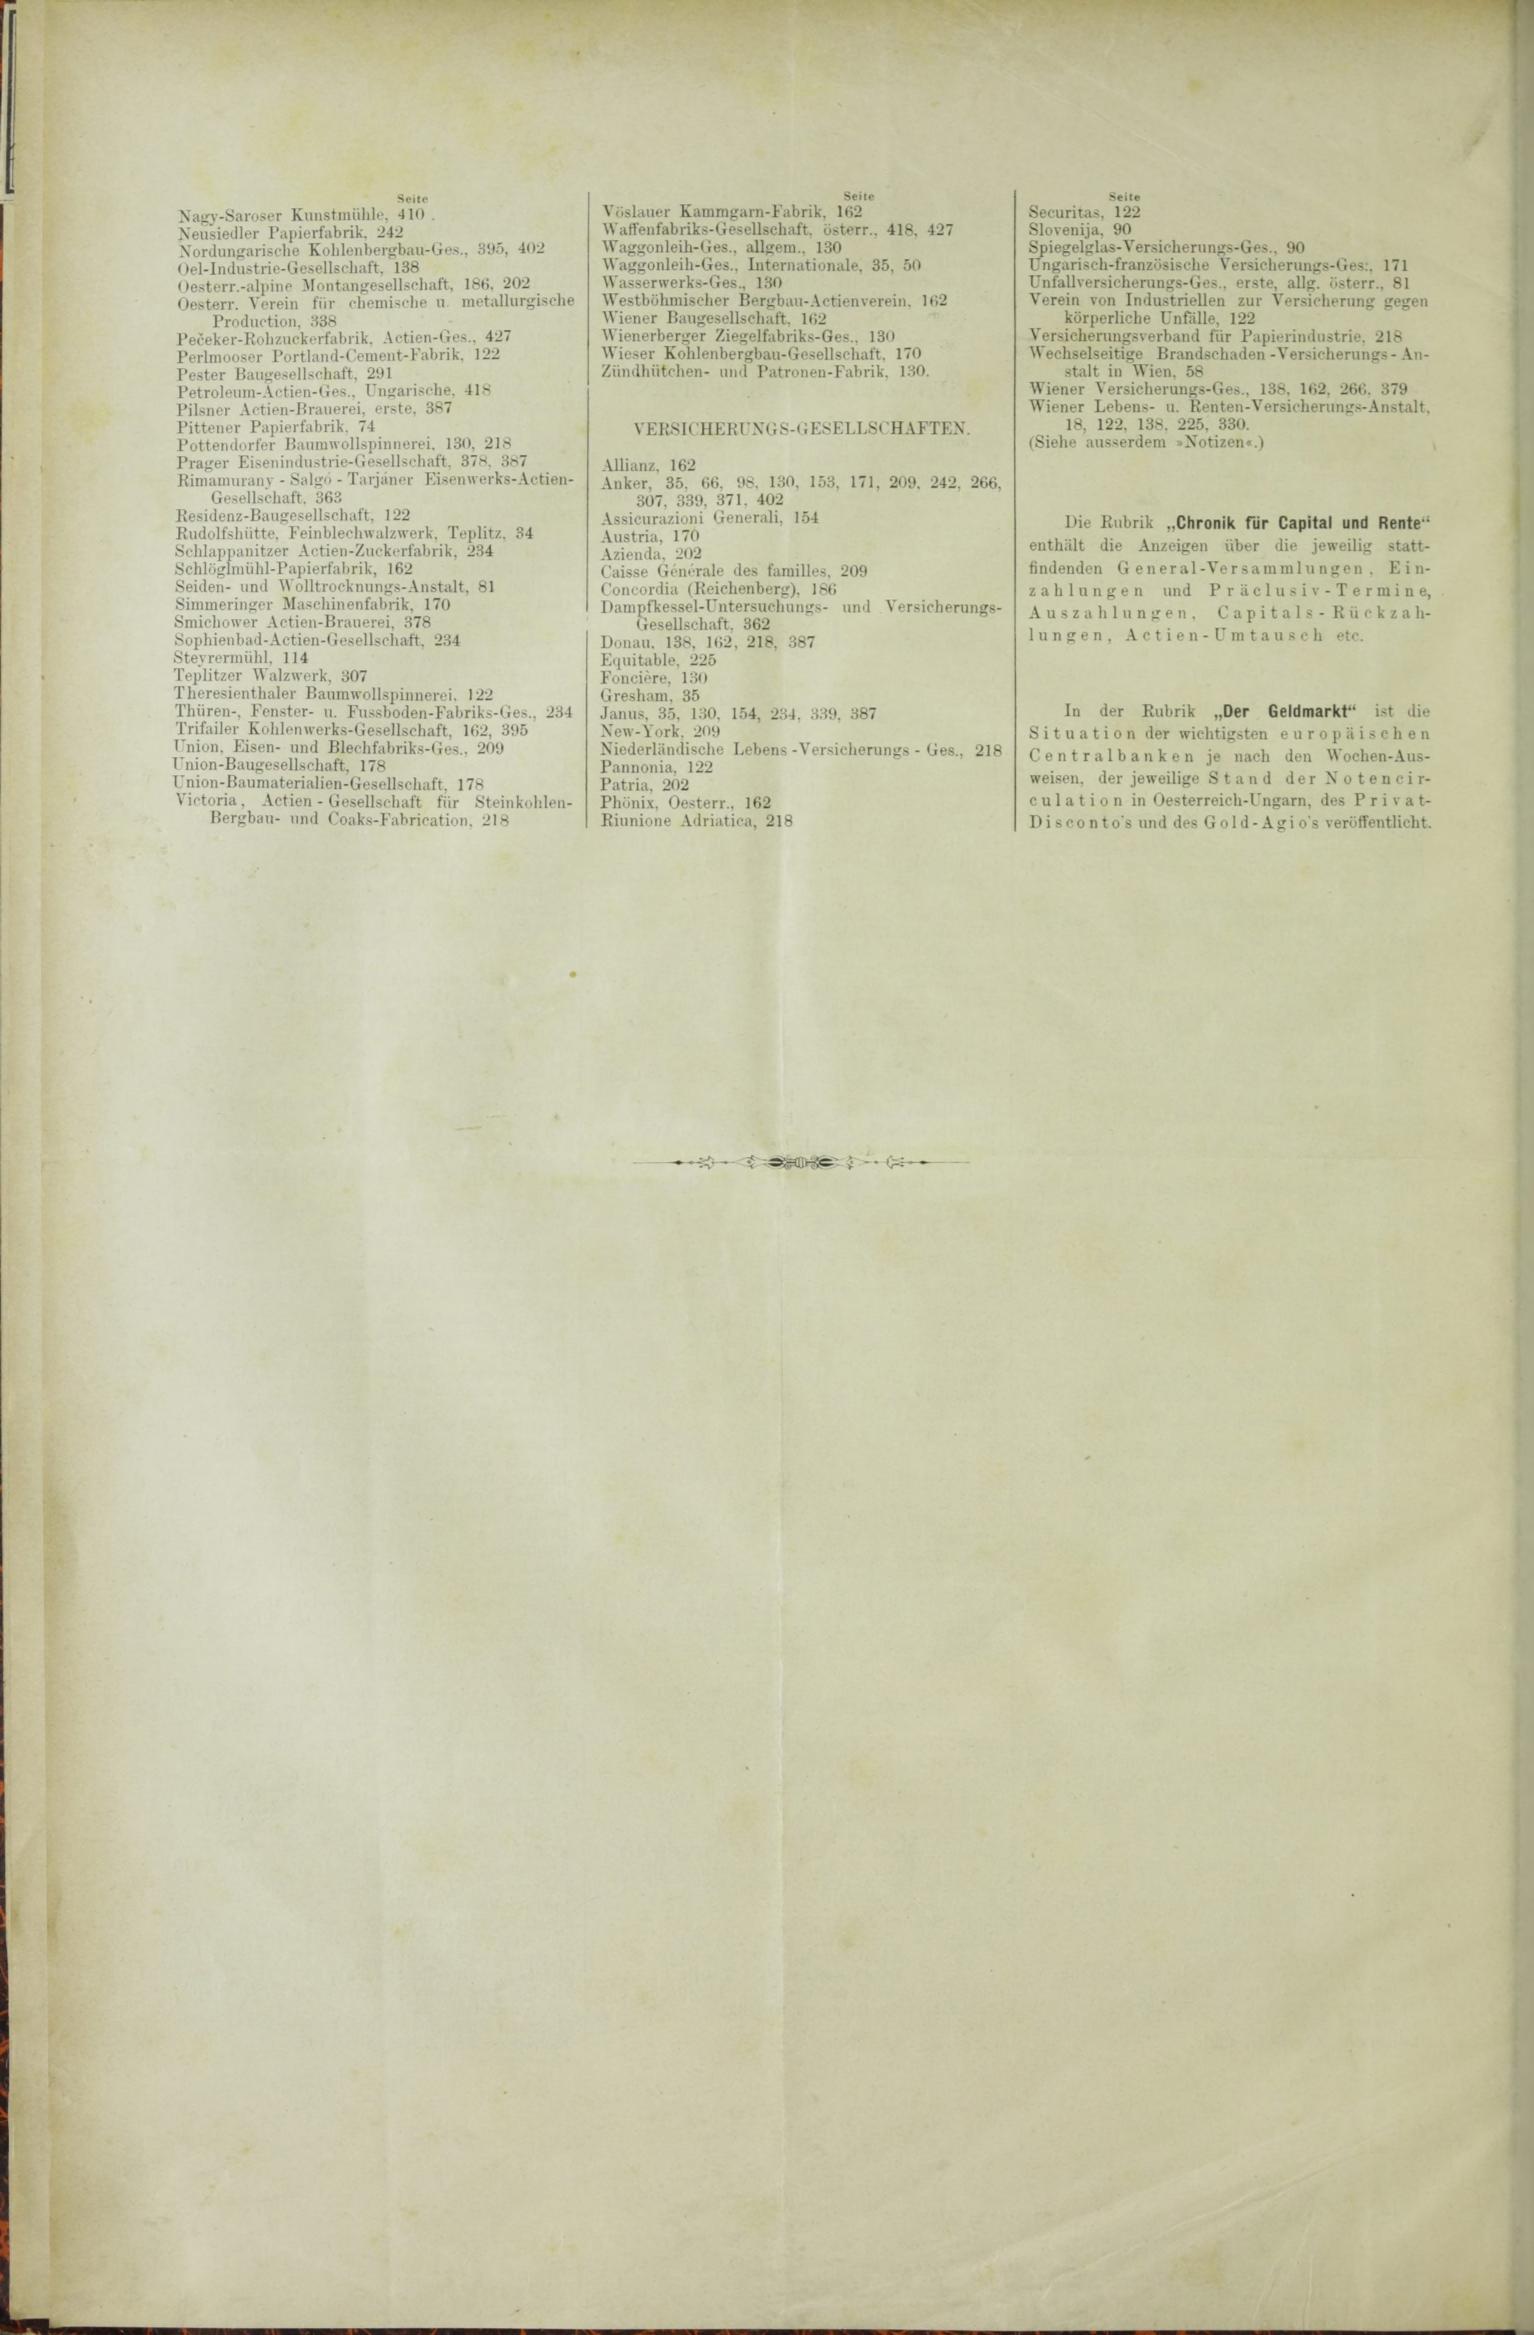 Der Tresor 04.06.1885 - Seite 12